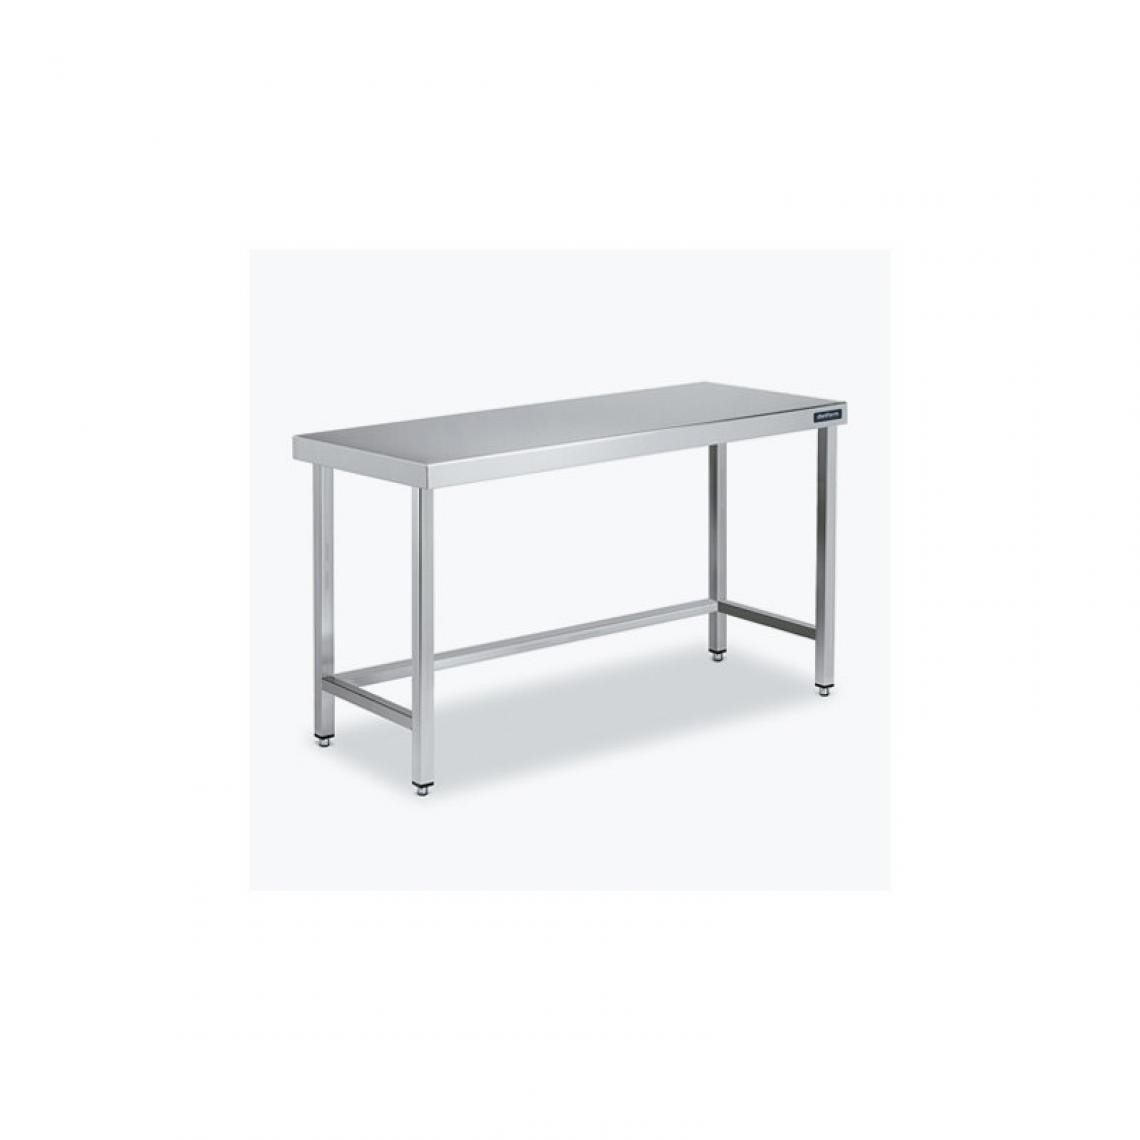 DISTFORM - Table Centrale 600x700 avec Renforts - Distform - Inox 18/10700x700x850mm - Tables à manger